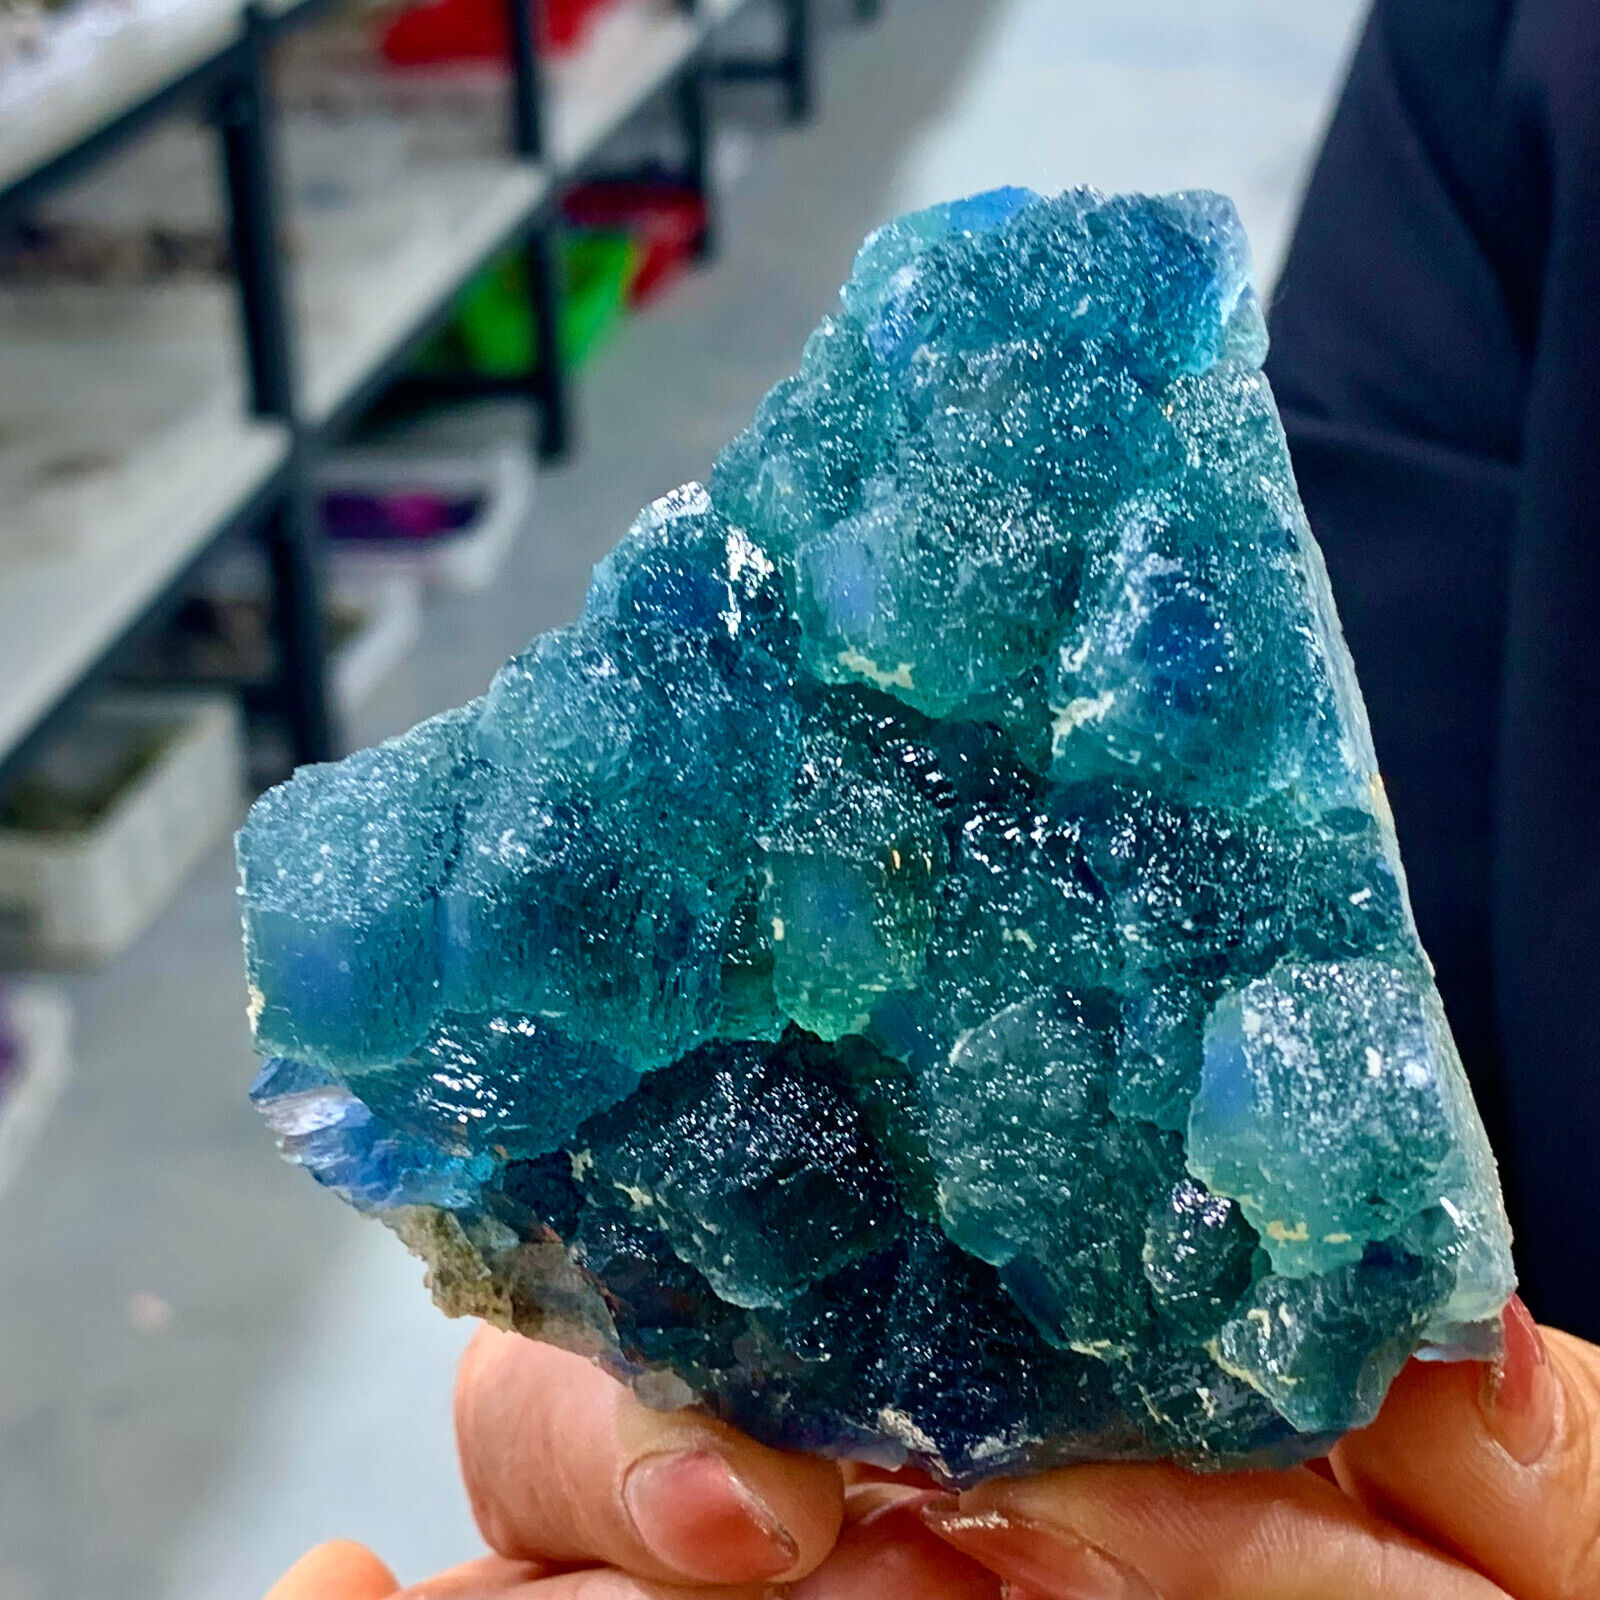 411G NATURAL Blue FLUORITE Quartz CrystalCluster Mineral Specimen